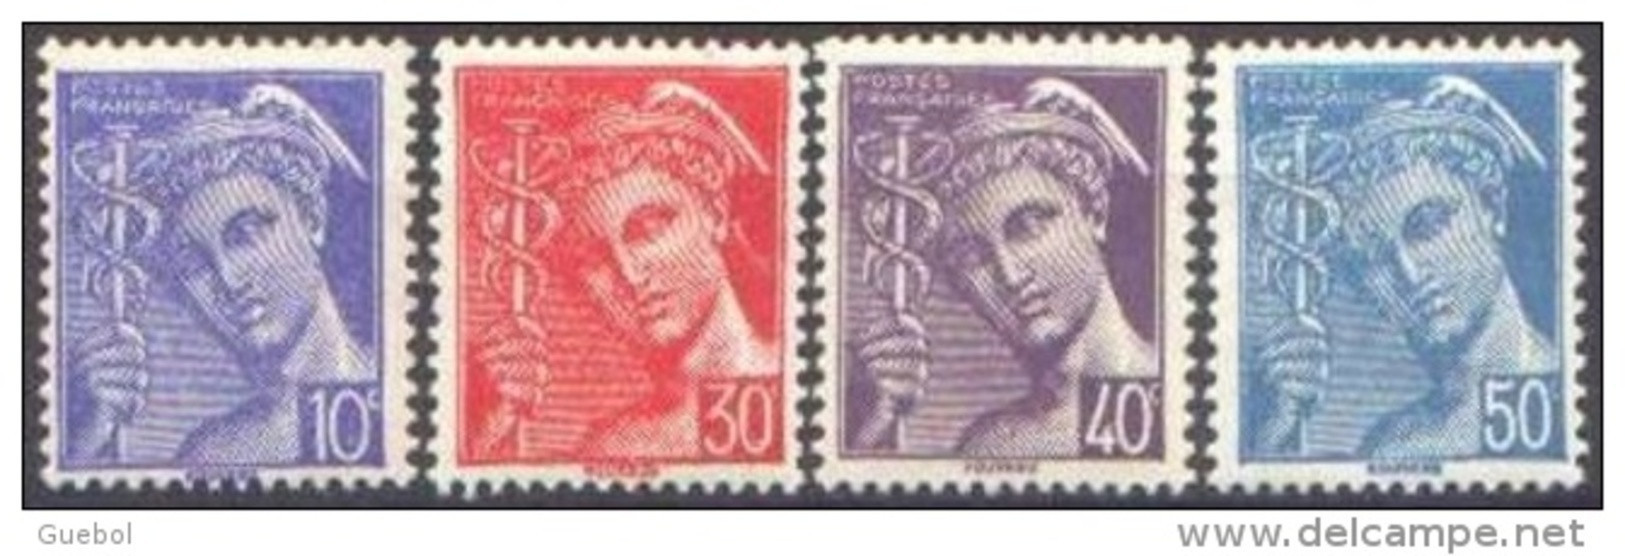 France Mercure N°  546 + 547 + 548 Et 549 ** Les - 10, 30, 40, Et 50 Centimes - Légende Poste Française - 1938-42 Mercurius